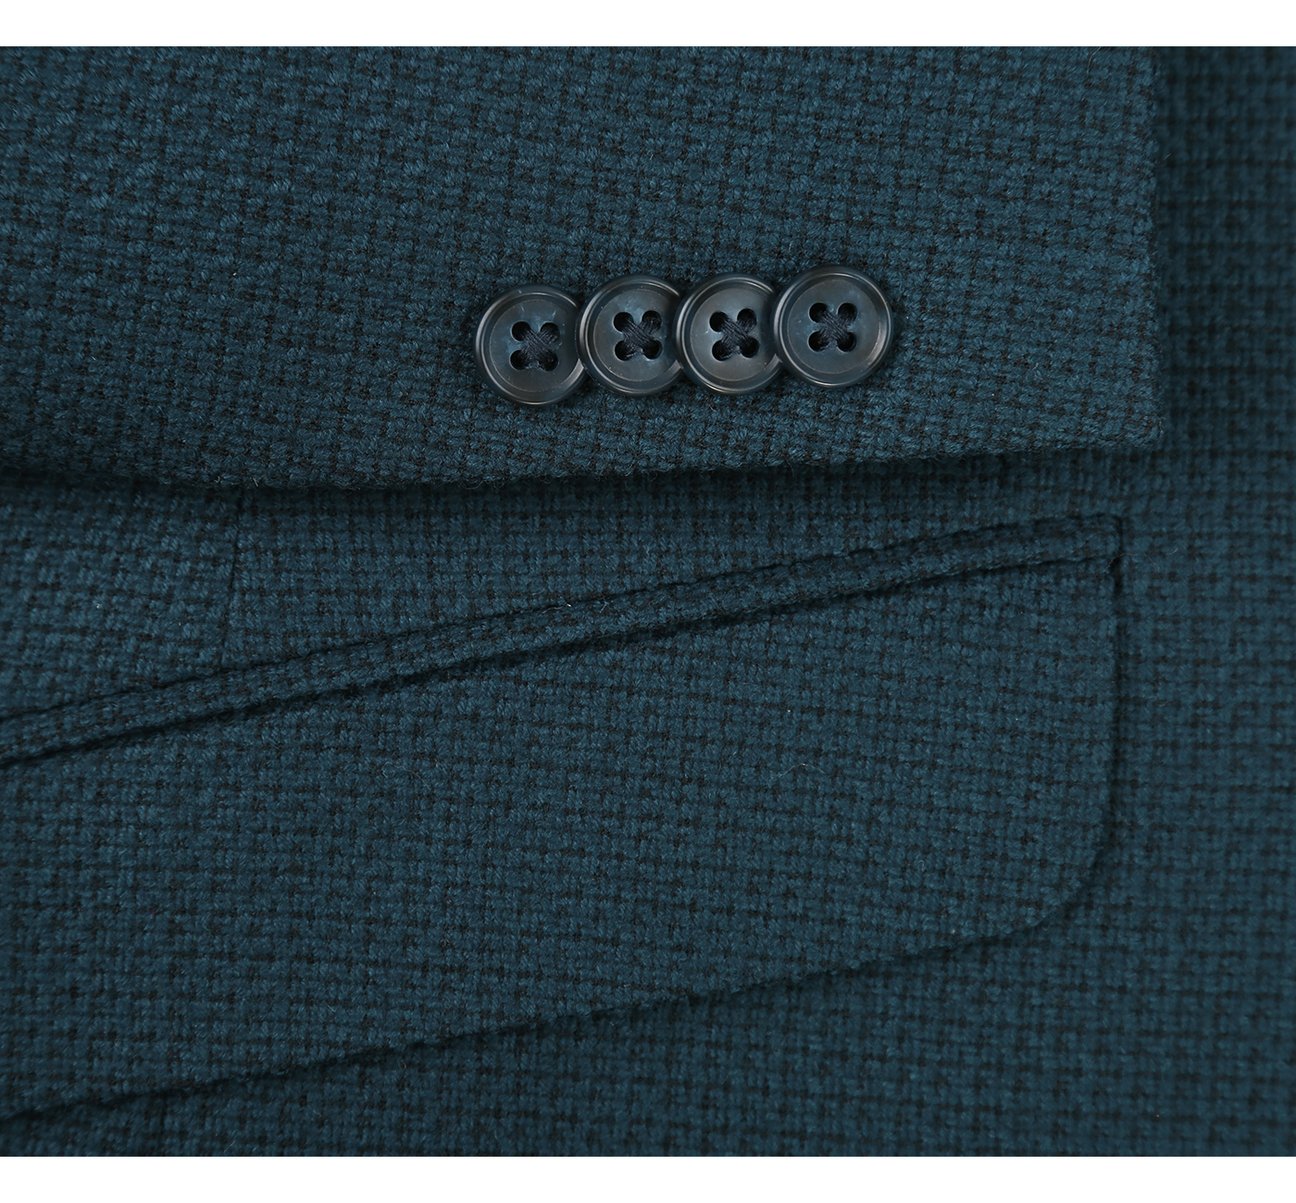 RENOIR Black/Blue Slim Fit Wool Blend Sport Coat 560-2